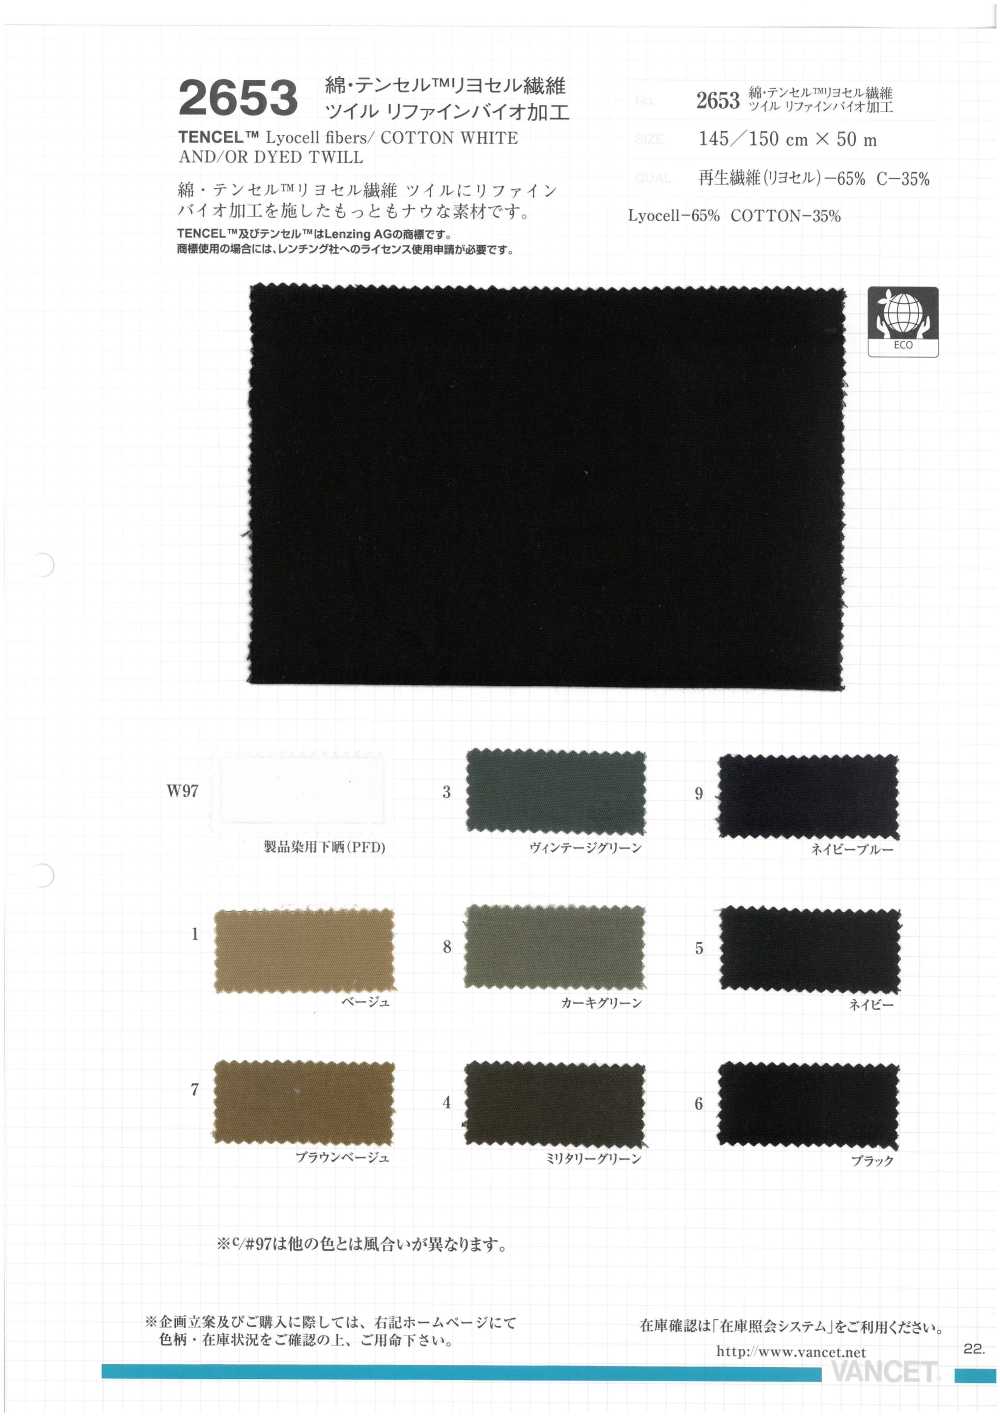 2653 Baumwolle/Tencel(TM) Lyocell-Faser-Twill Raffinierte Bio-Verarbeitung[Textilgewebe] VANCET